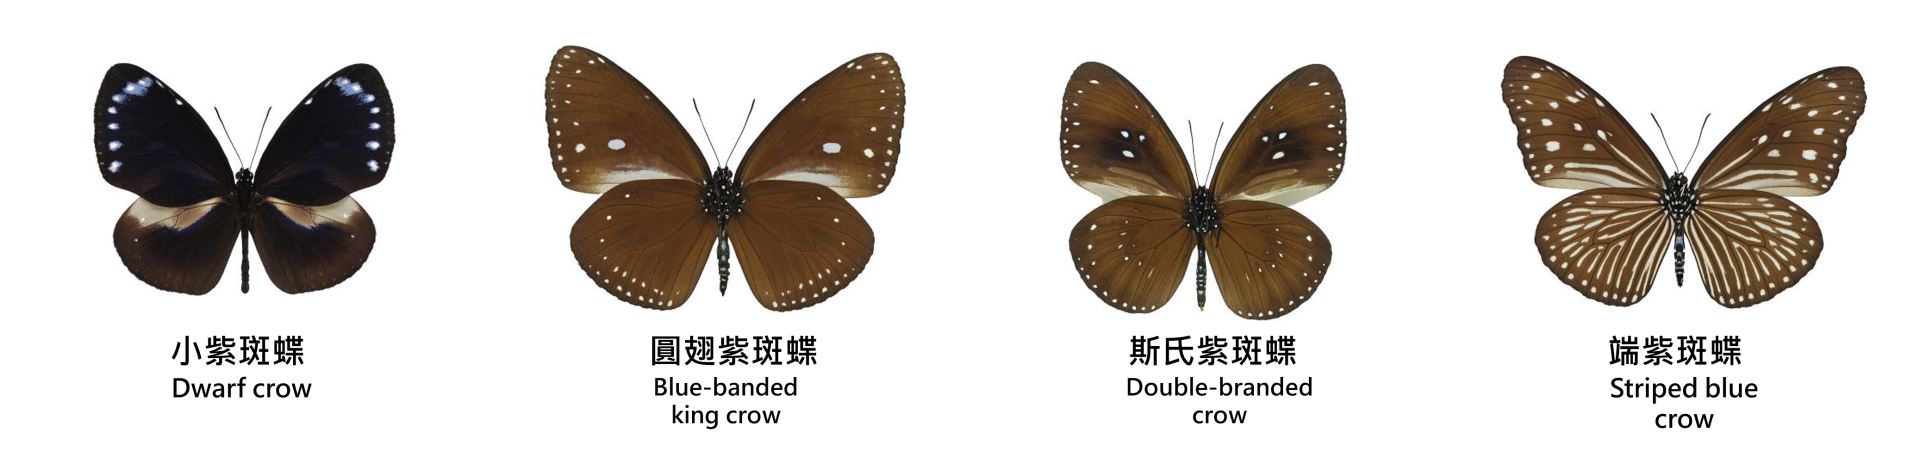 (從左至右)小紫斑蝶、圓翅紫斑蝶、斯氏紫斑蝶、端紫斑蝶